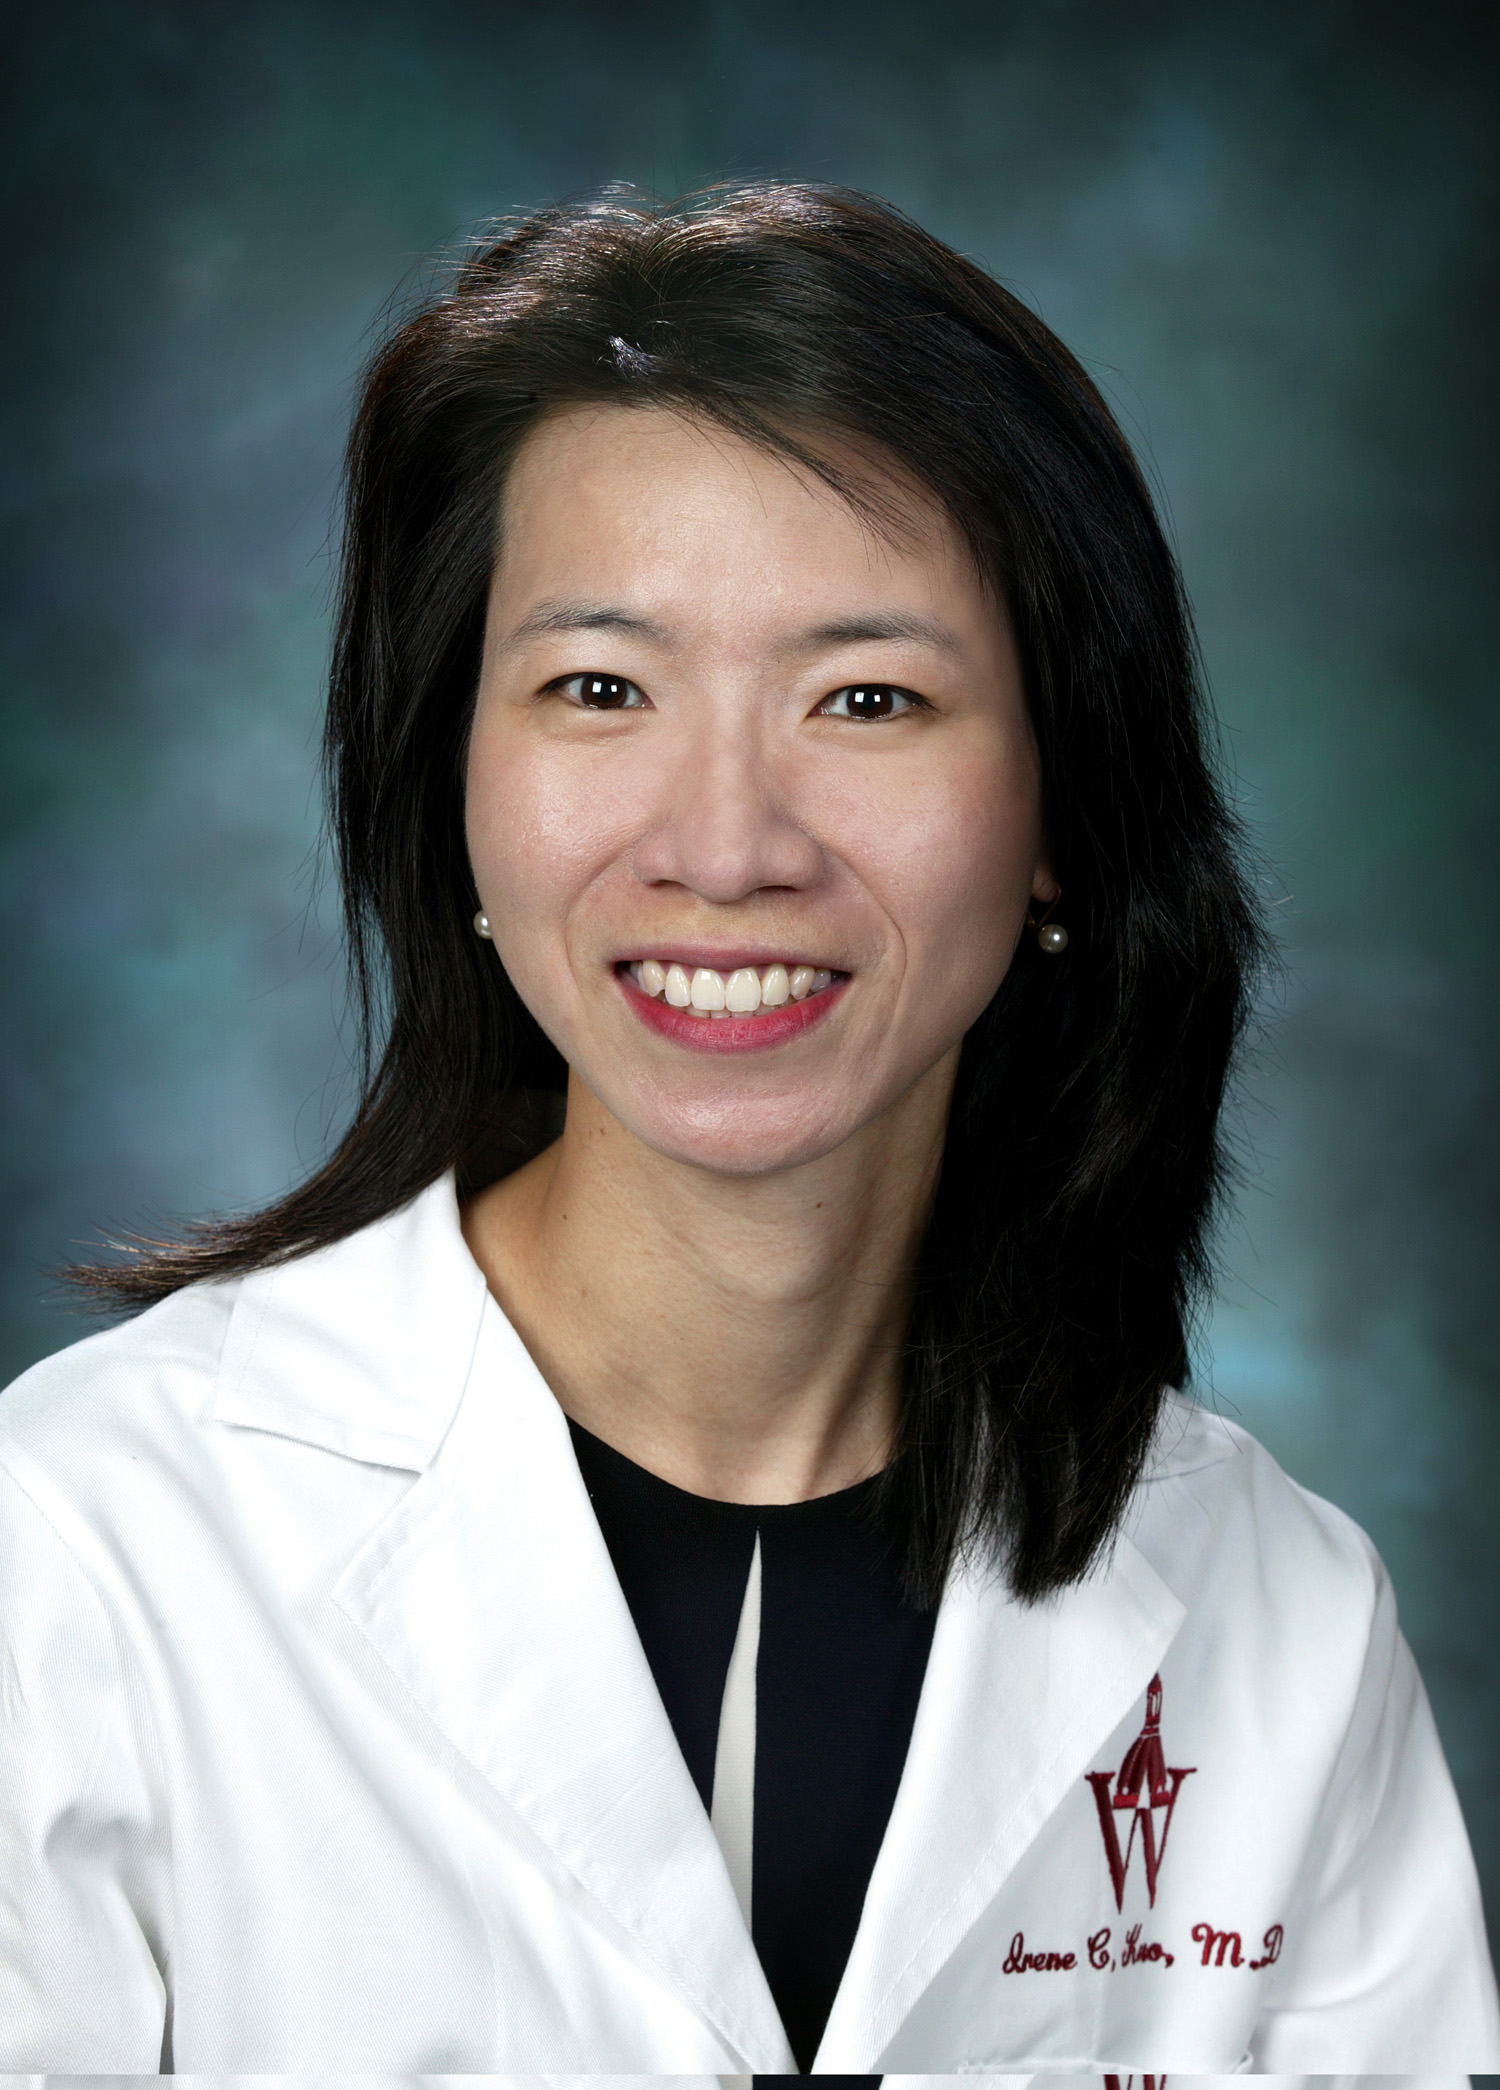 Irene C. Kuo of the Wilmer Eye Institute